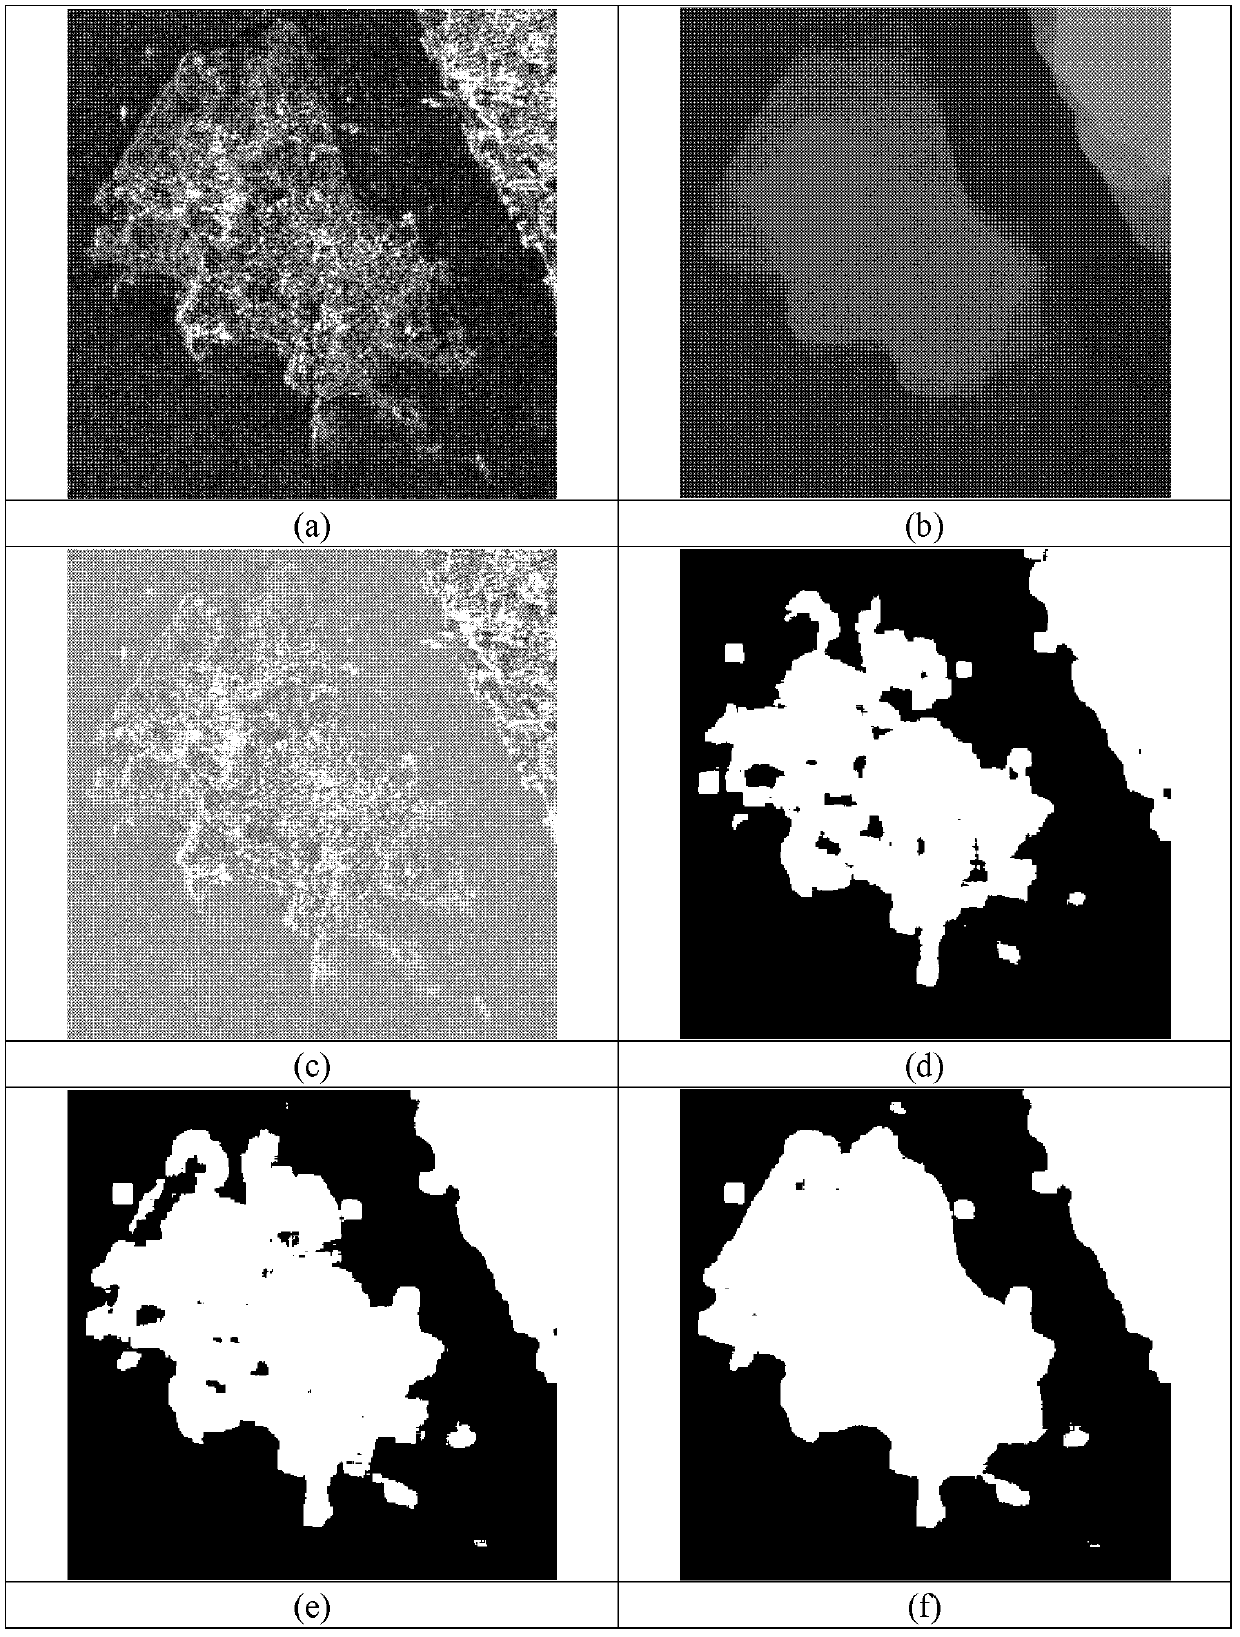 SAR (synthetic aperture radar) image segmentation method based on total-variation spectral clustering